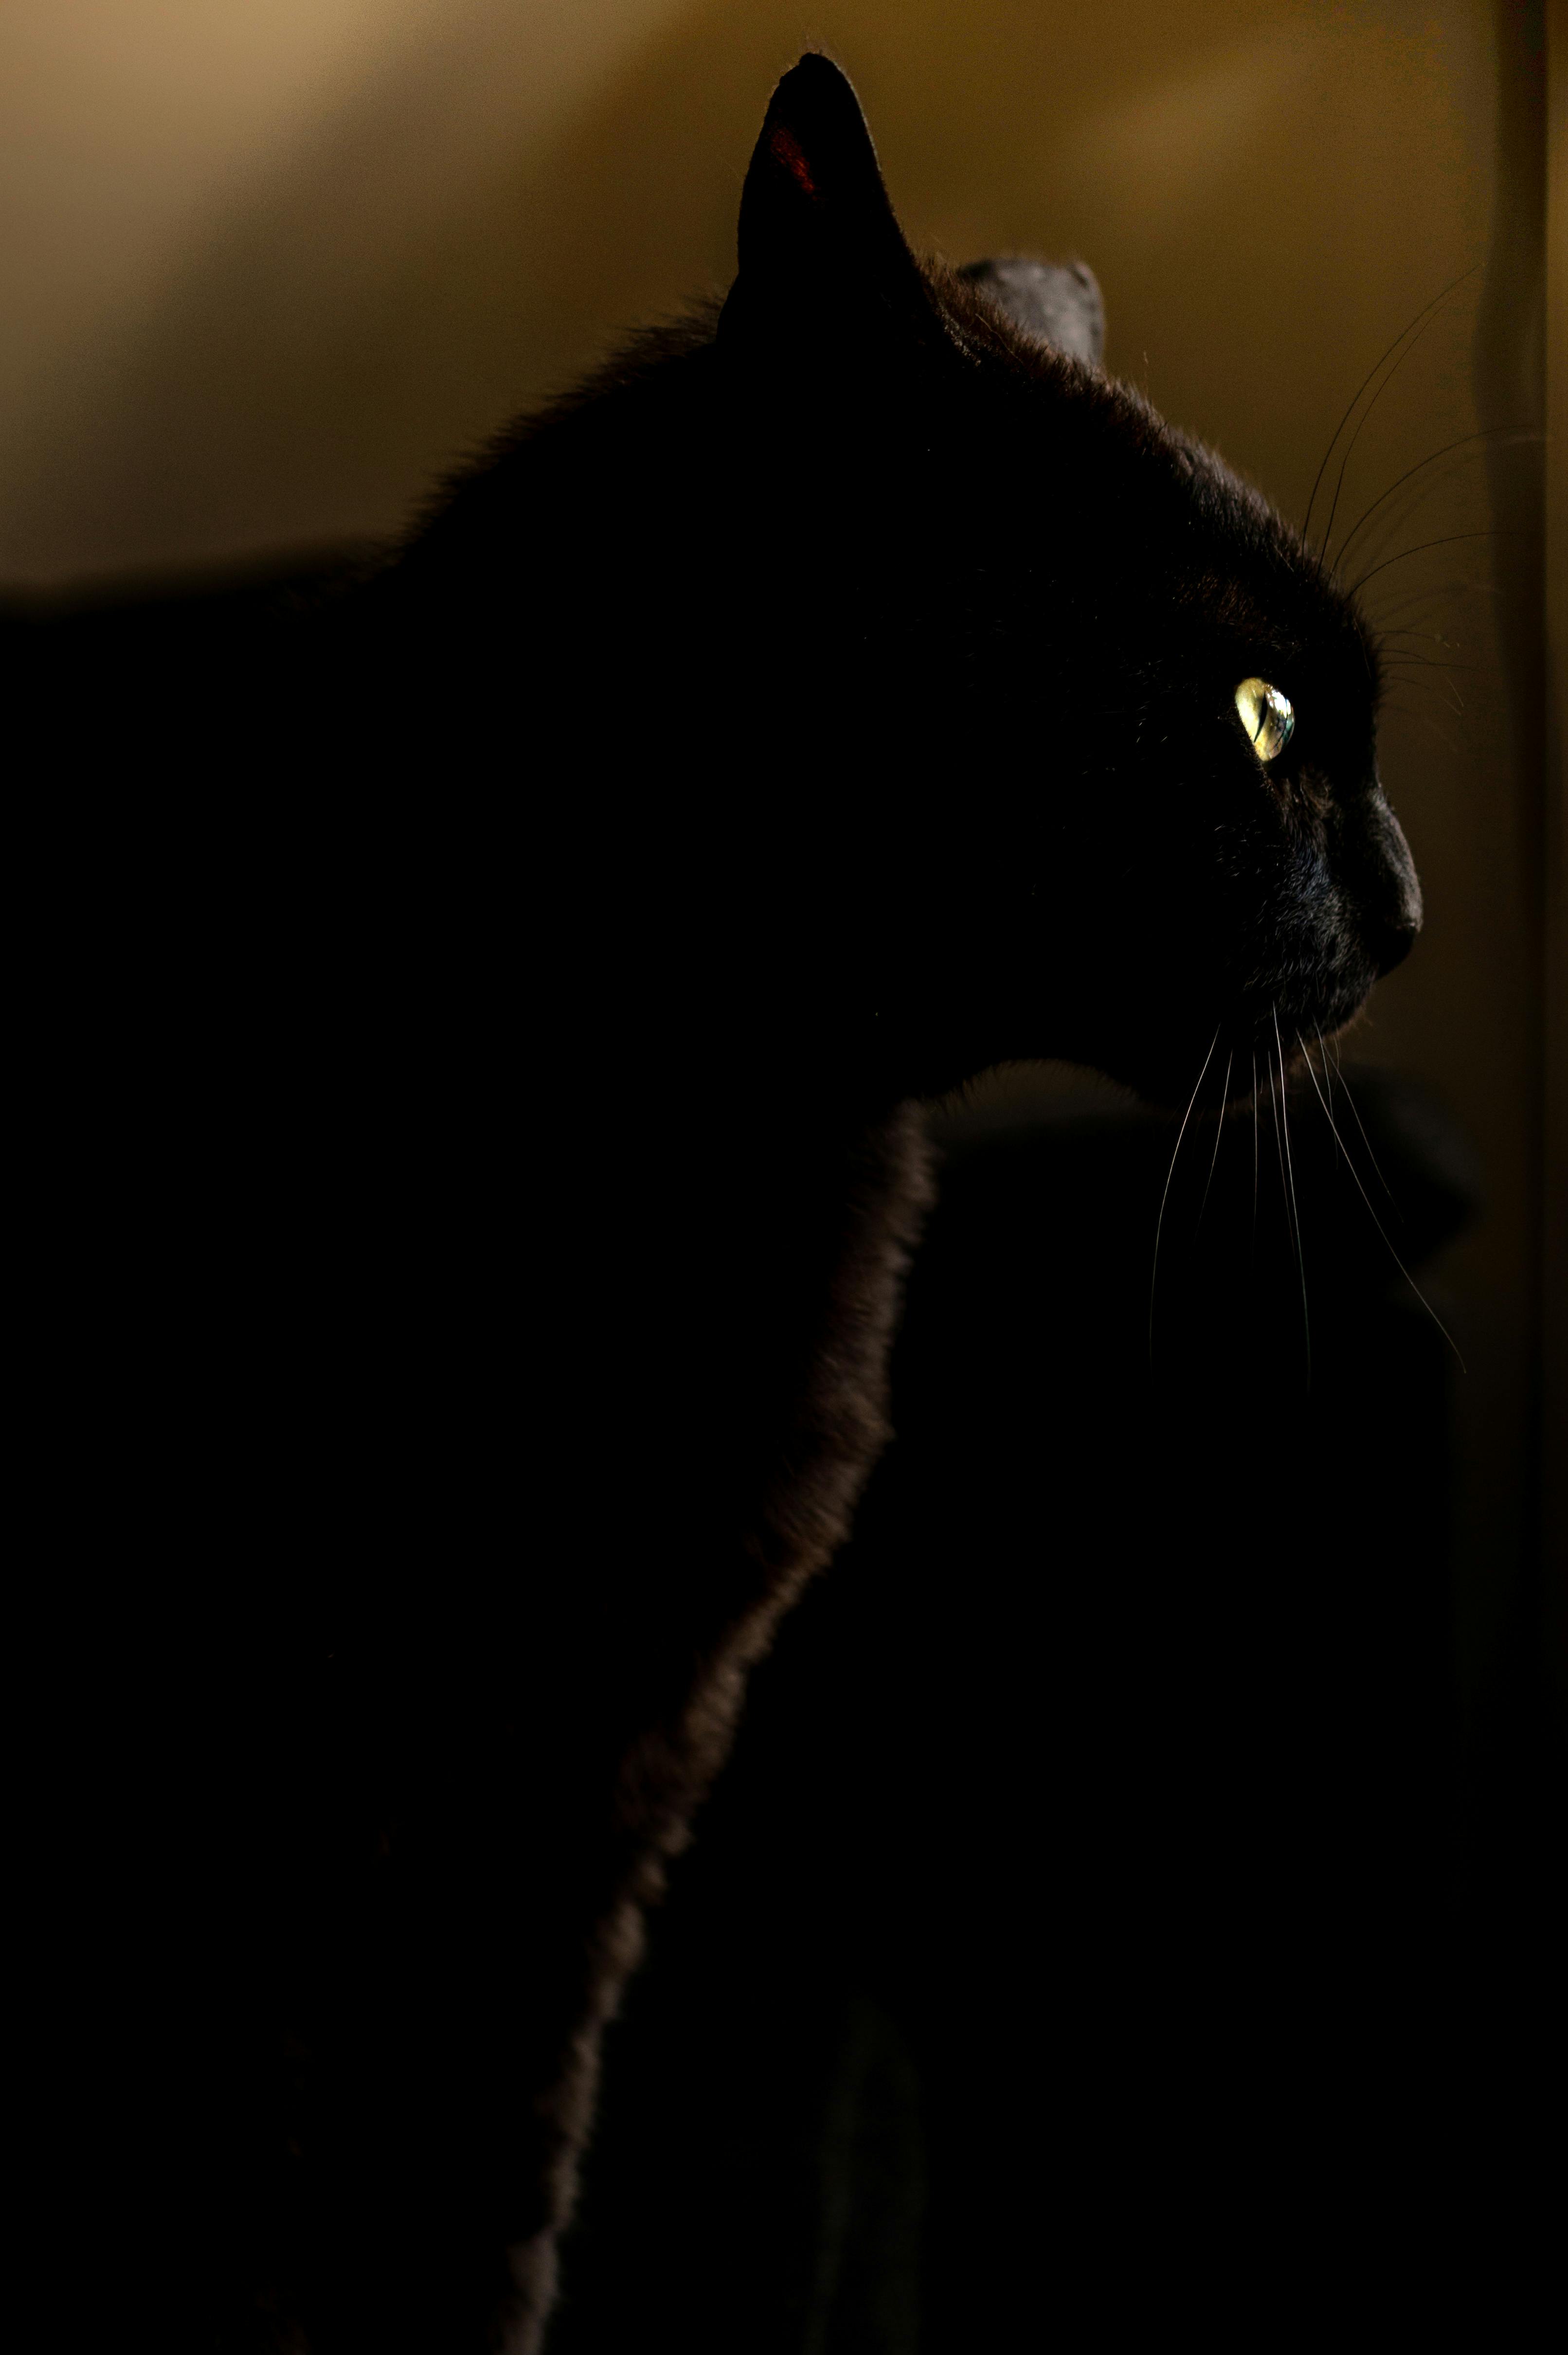 panther eyes at night